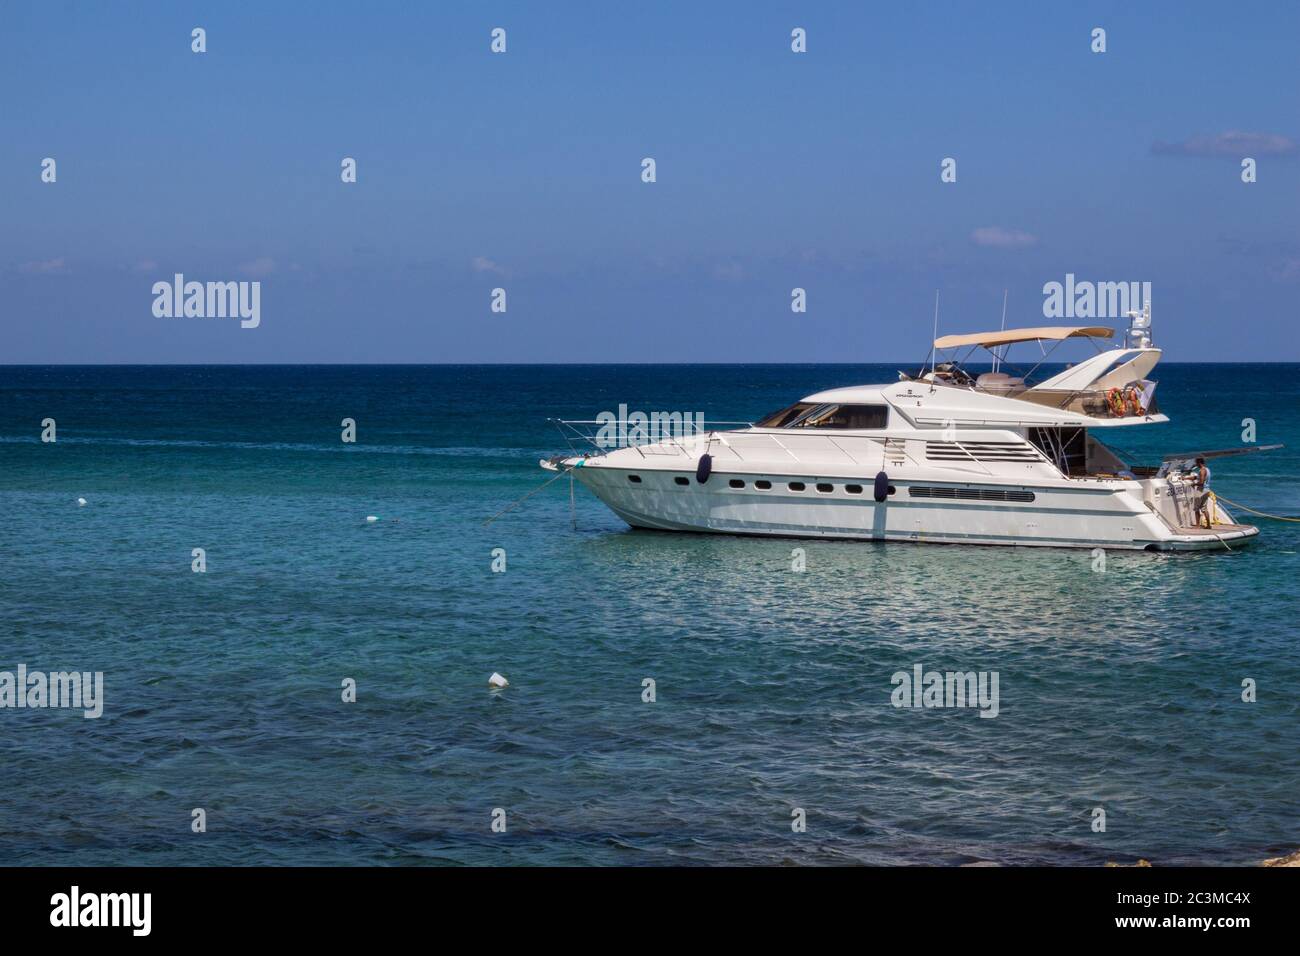 Protaras, Zypern - 29. Juni 2015: Yacht im Mittelmeer in der Nähe von Protaras Dorf. Stockfoto